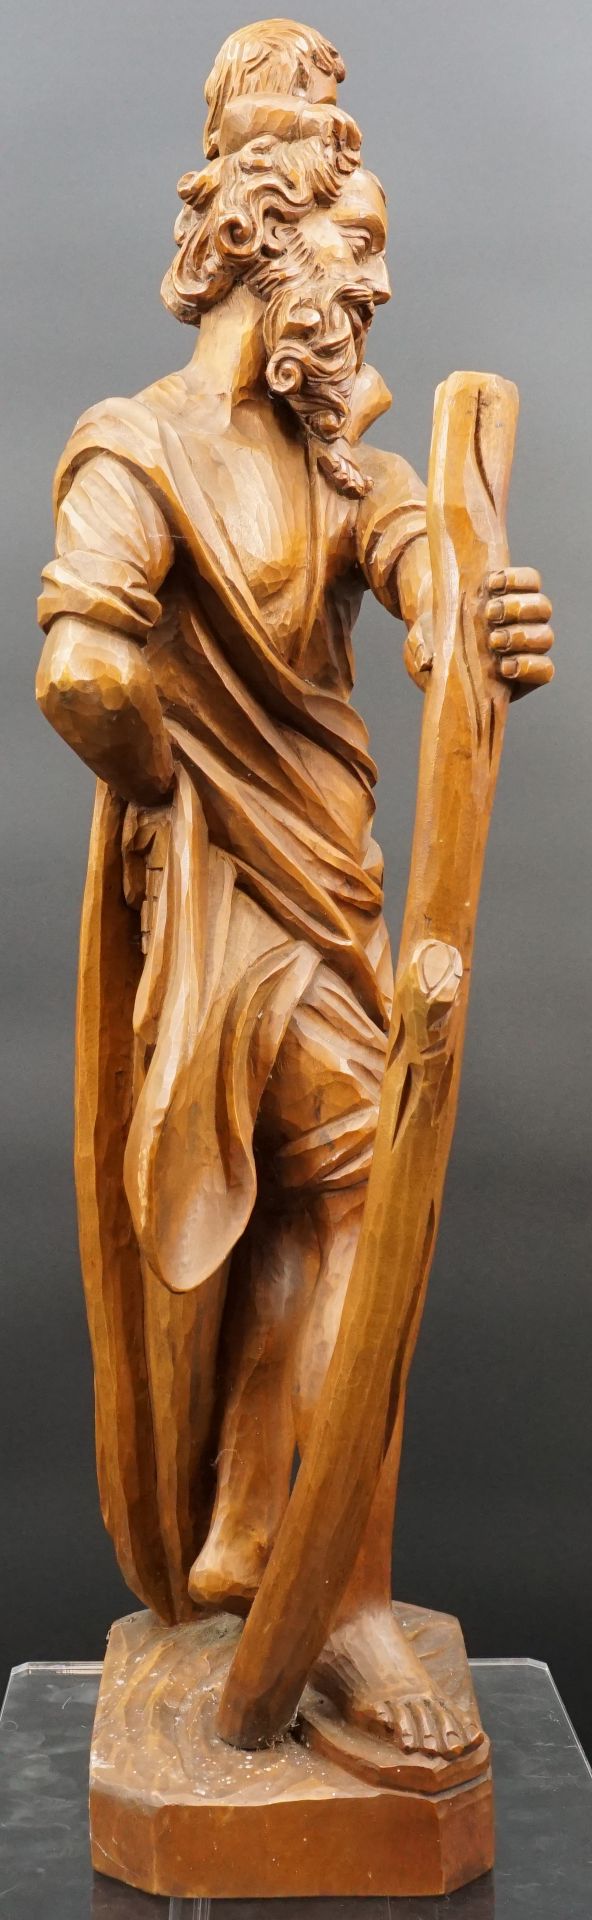 Holzfigur. Hl. Christophorus mit Christuskind. Wohl 20. Jahrhundert. - Bild 4 aus 10